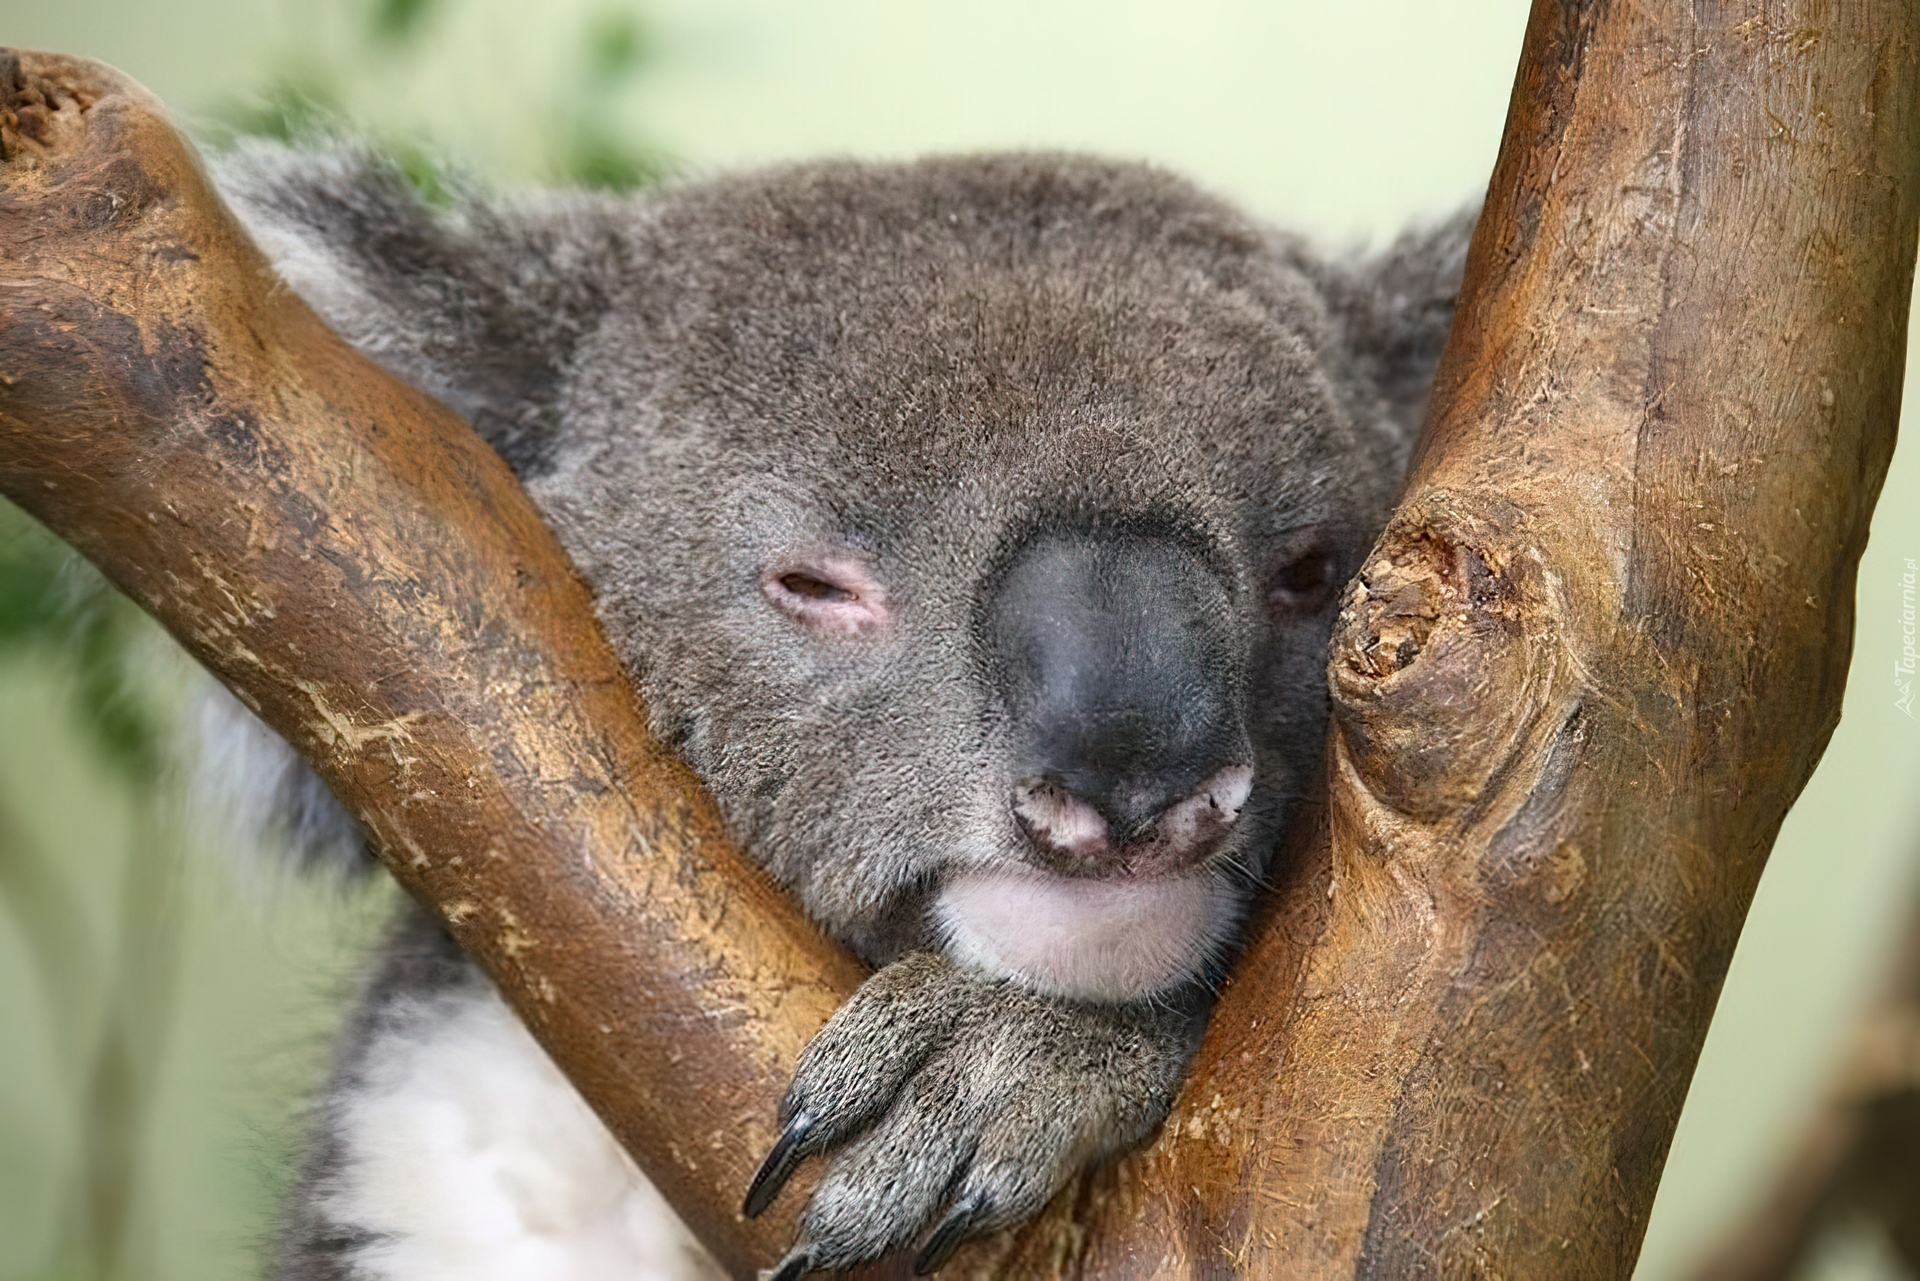 Koala, Sen